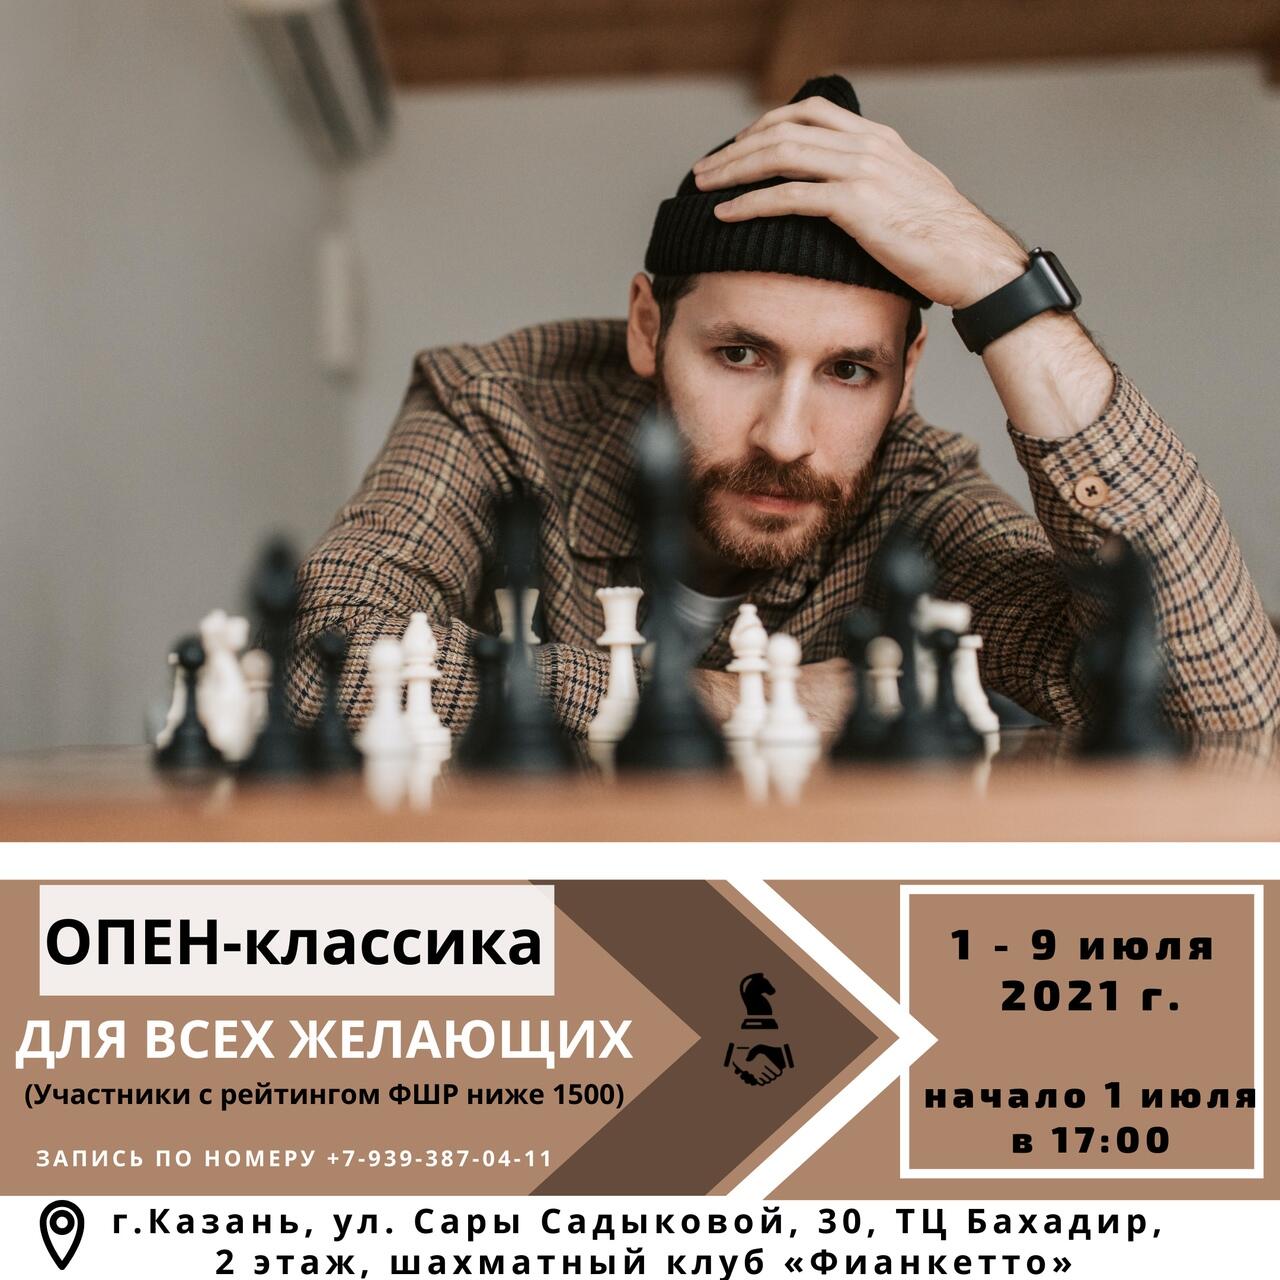 Приглашаем принять участие в ОПЕН-турнире по шахматам